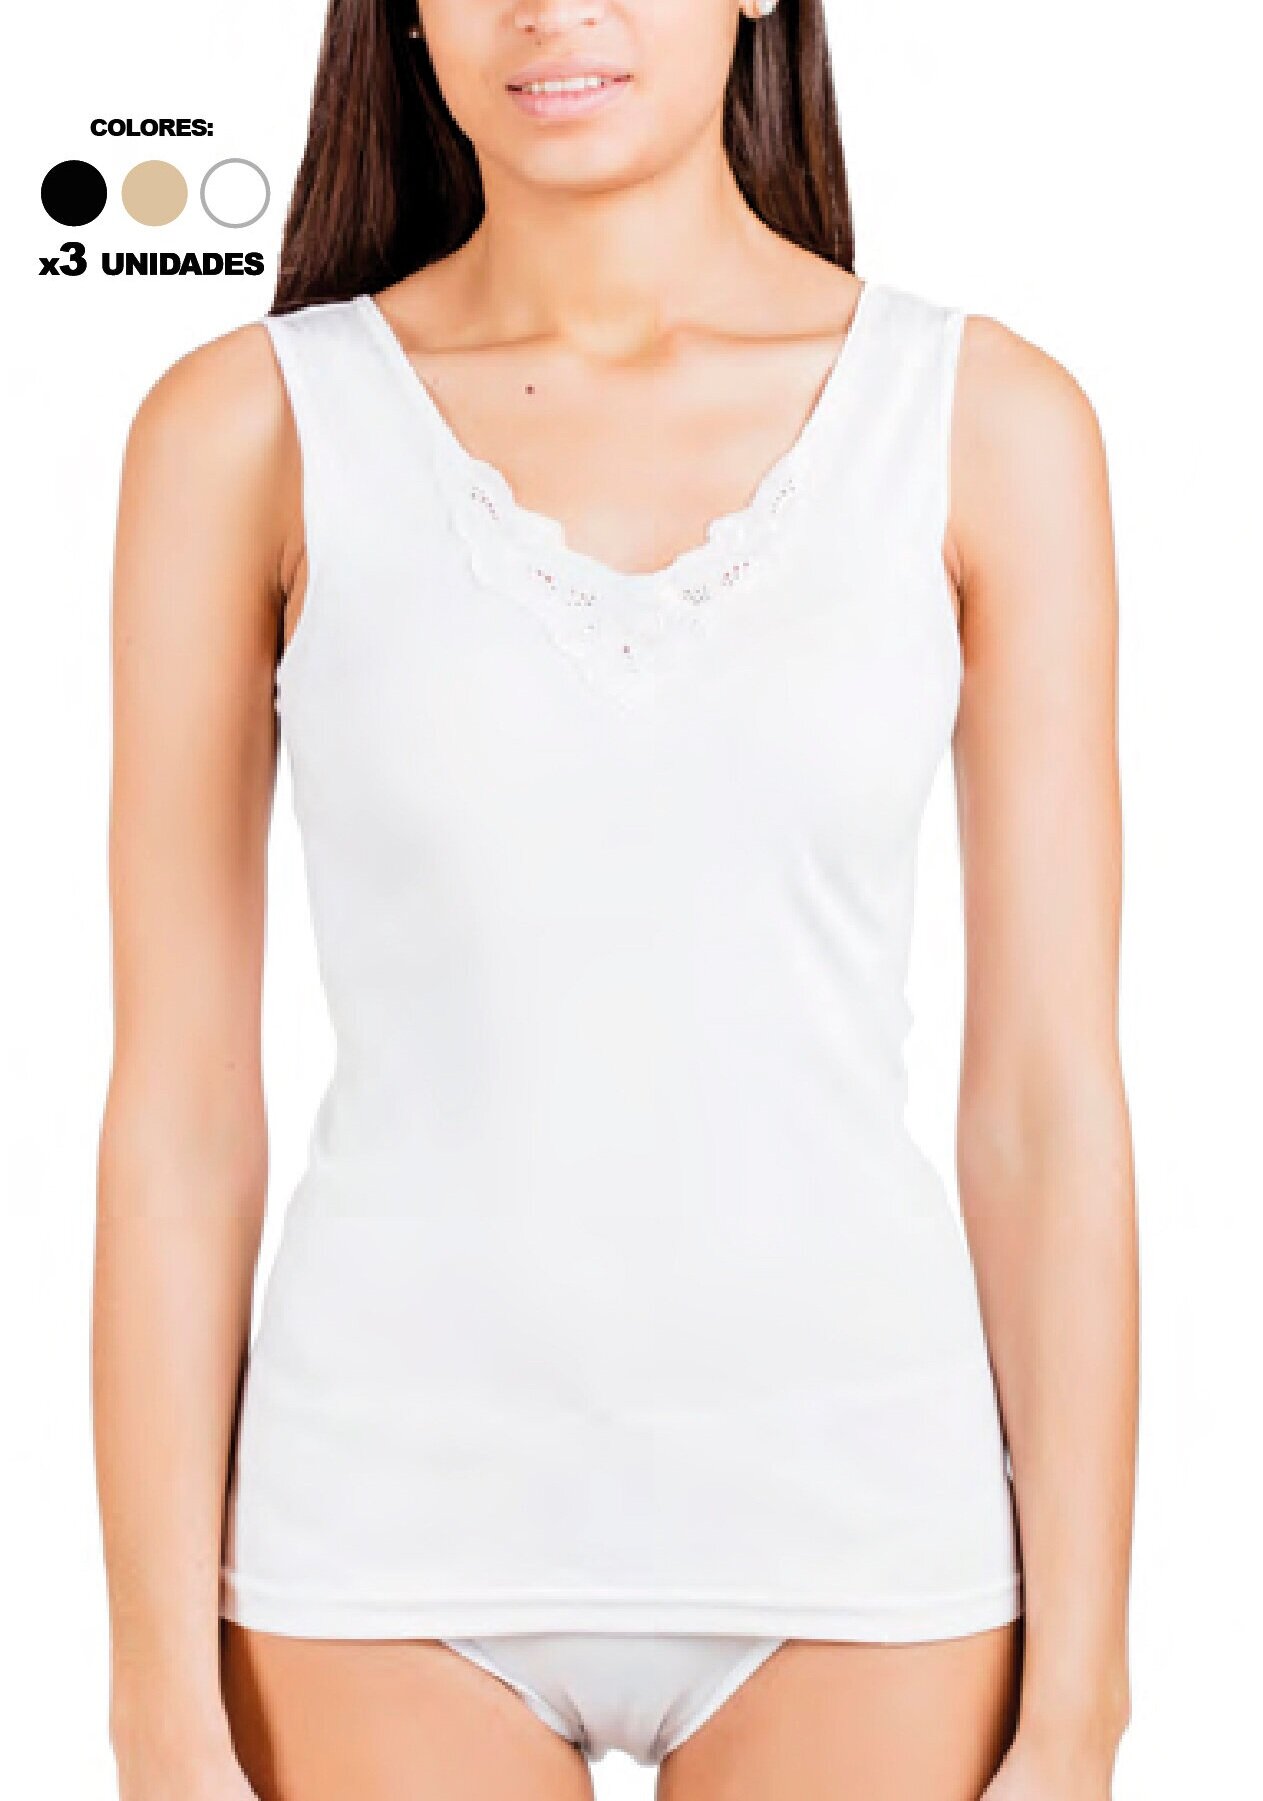 Camiseta manga larga blanca 100% algodón, Pijamas de mujer